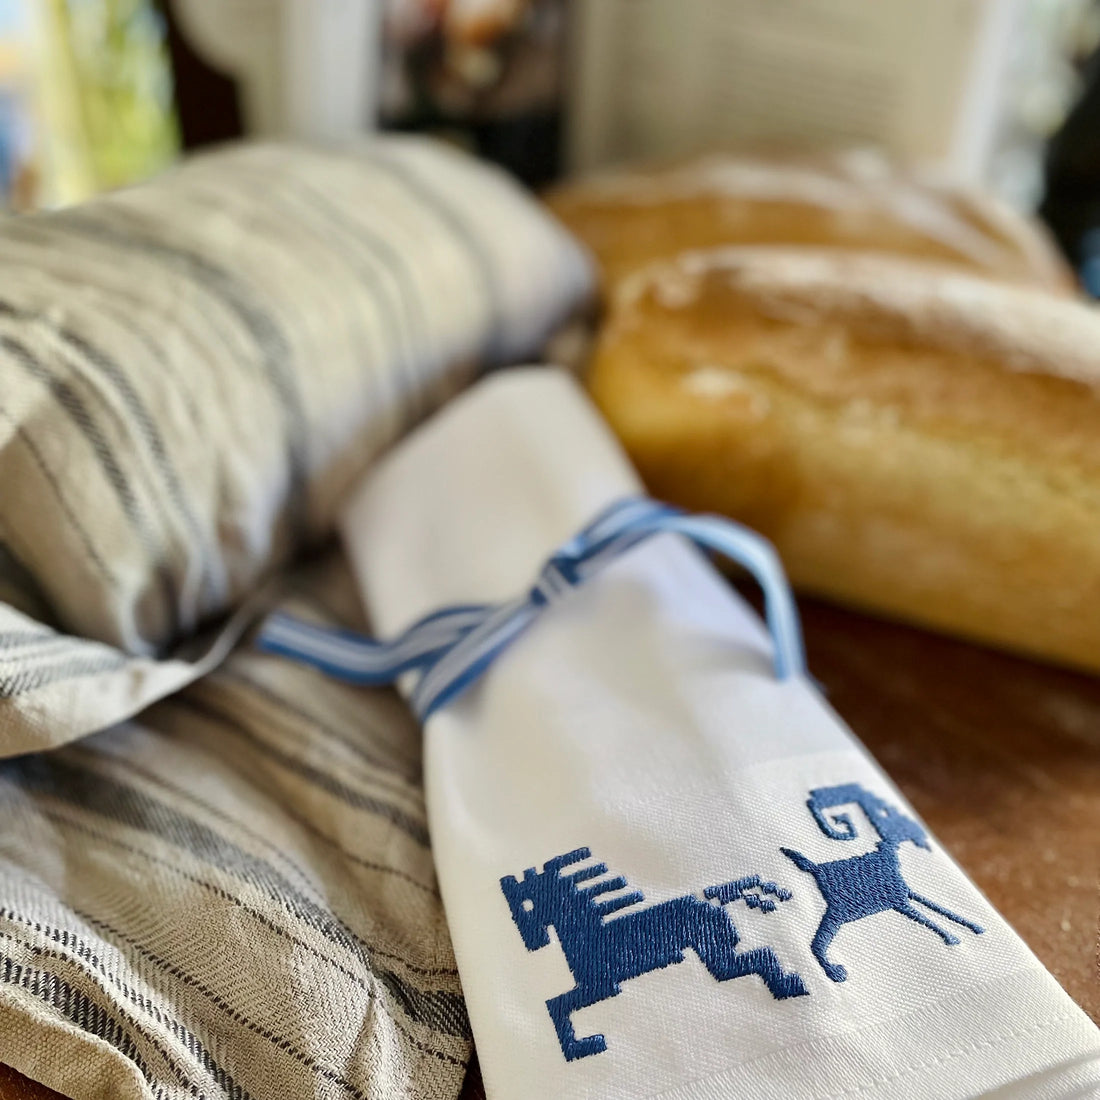 Vita tygservetter vid med broderade nordiska motiv i blått. På skärbräda med nybakat bröd.